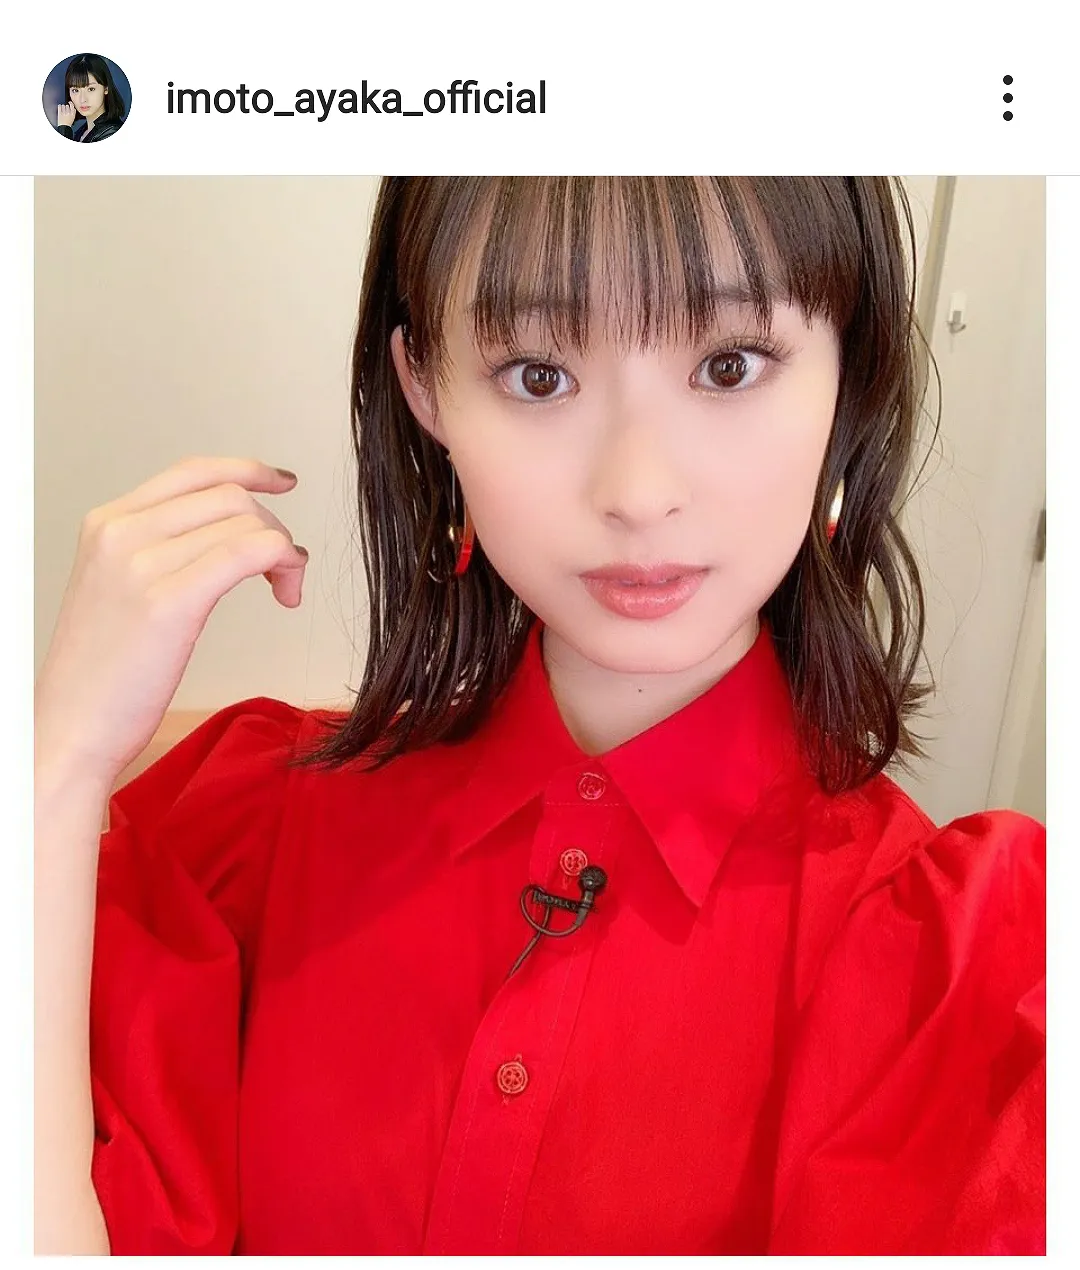 ※画像は井本彩花(imoto_ayaka_official)公式Instagramのスクリーンショット